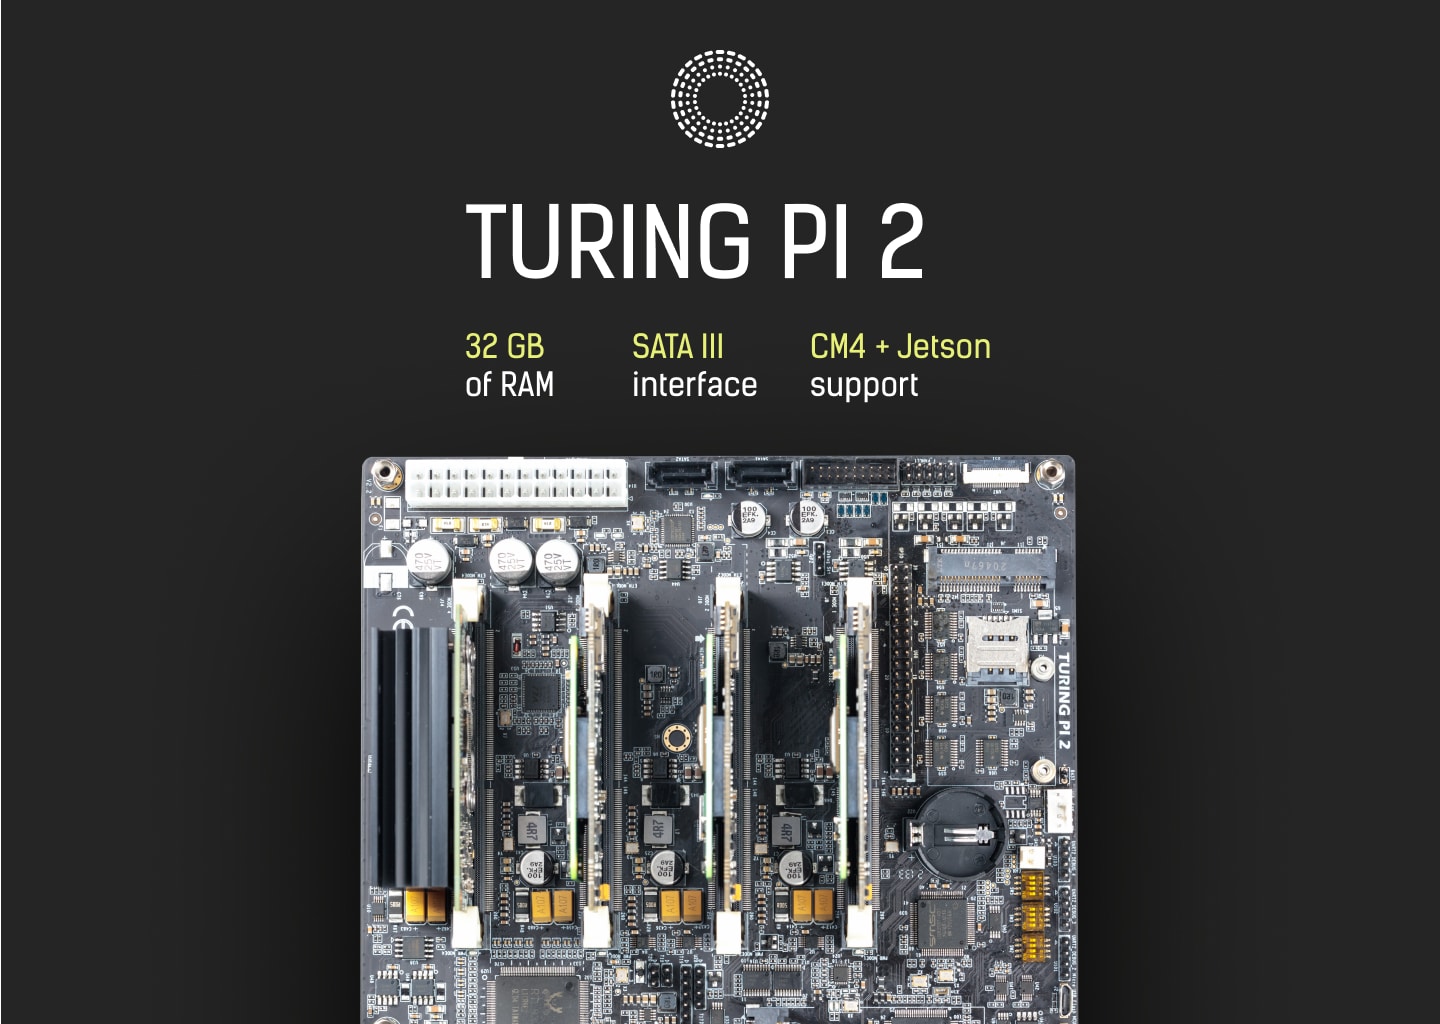 Turing Pi 2